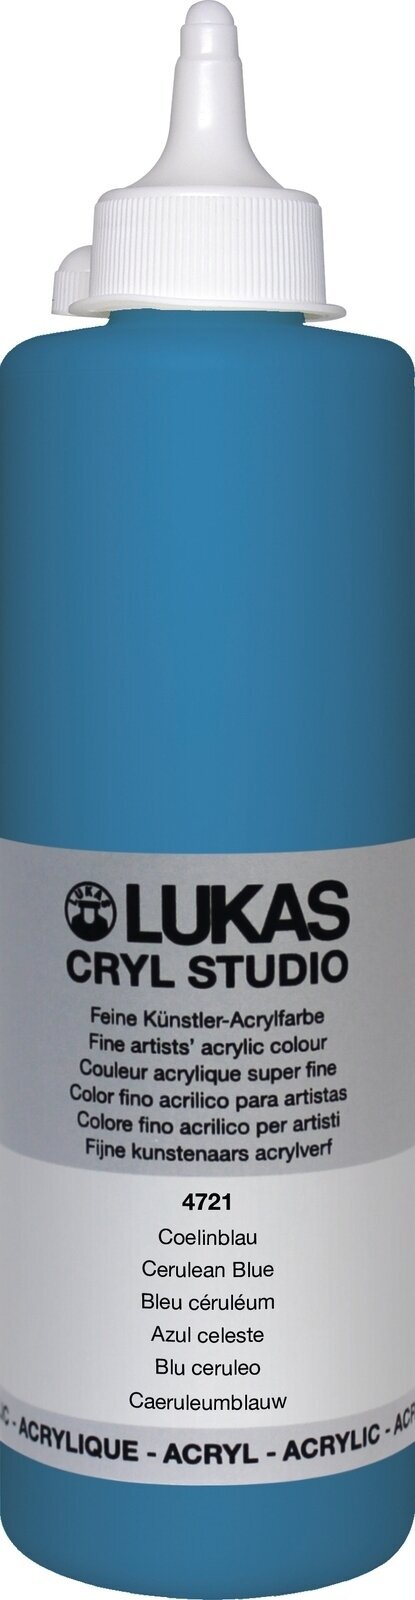 Acrylic Paint Lukas Cryl Studio Acrylic Paint 500 ml Cerulean Blue